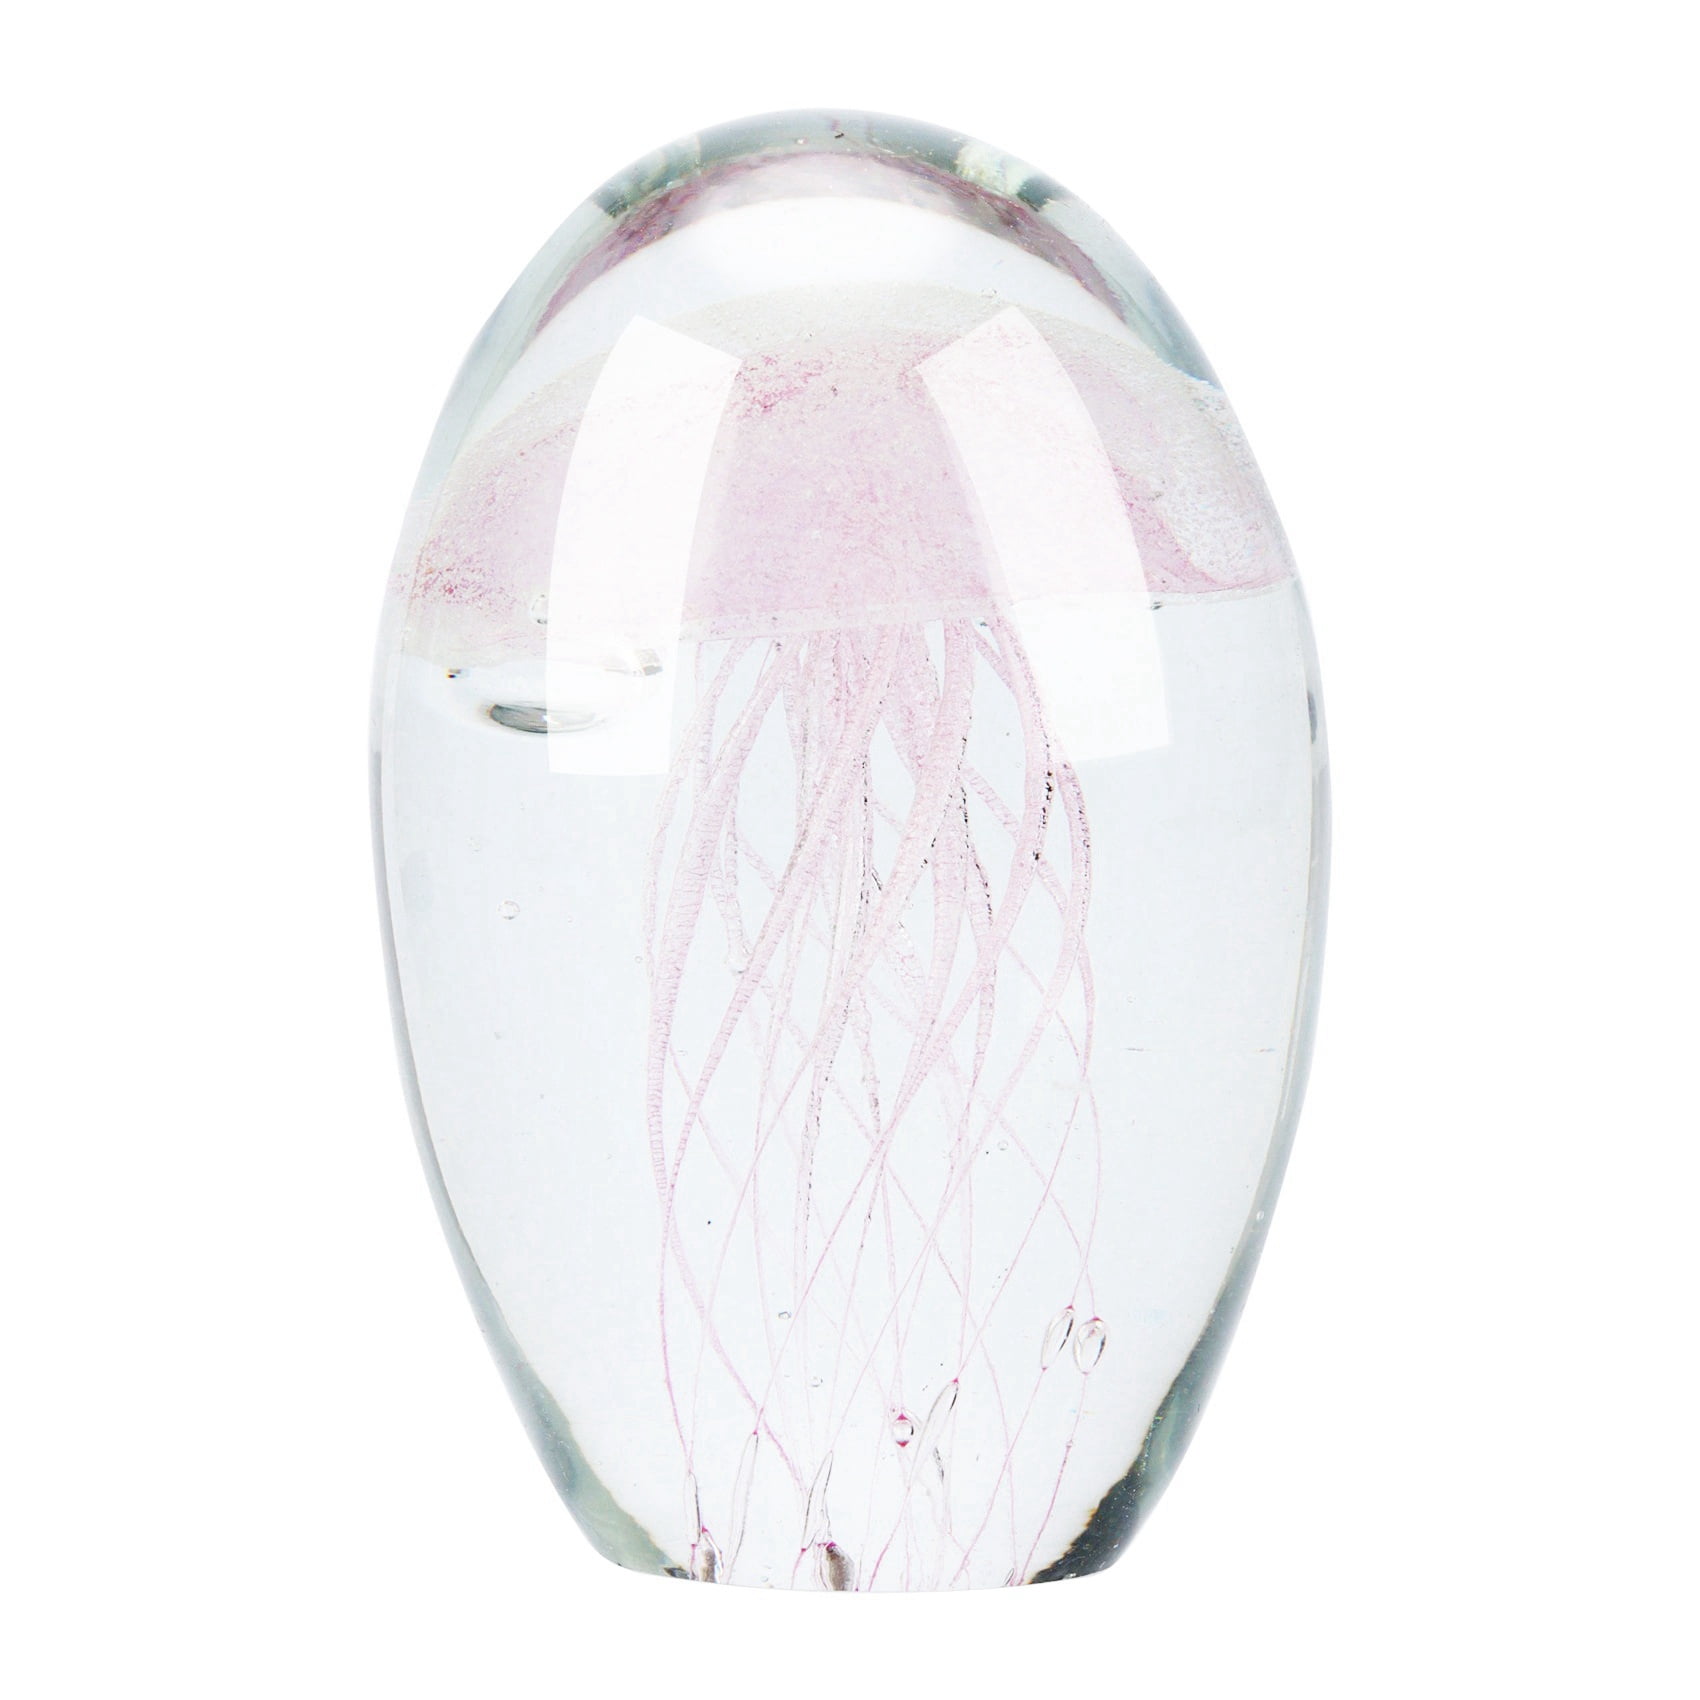 Handmade Jellyfish Paperweight Art Hand Blown Glass Animals Figurine Home Gifts 